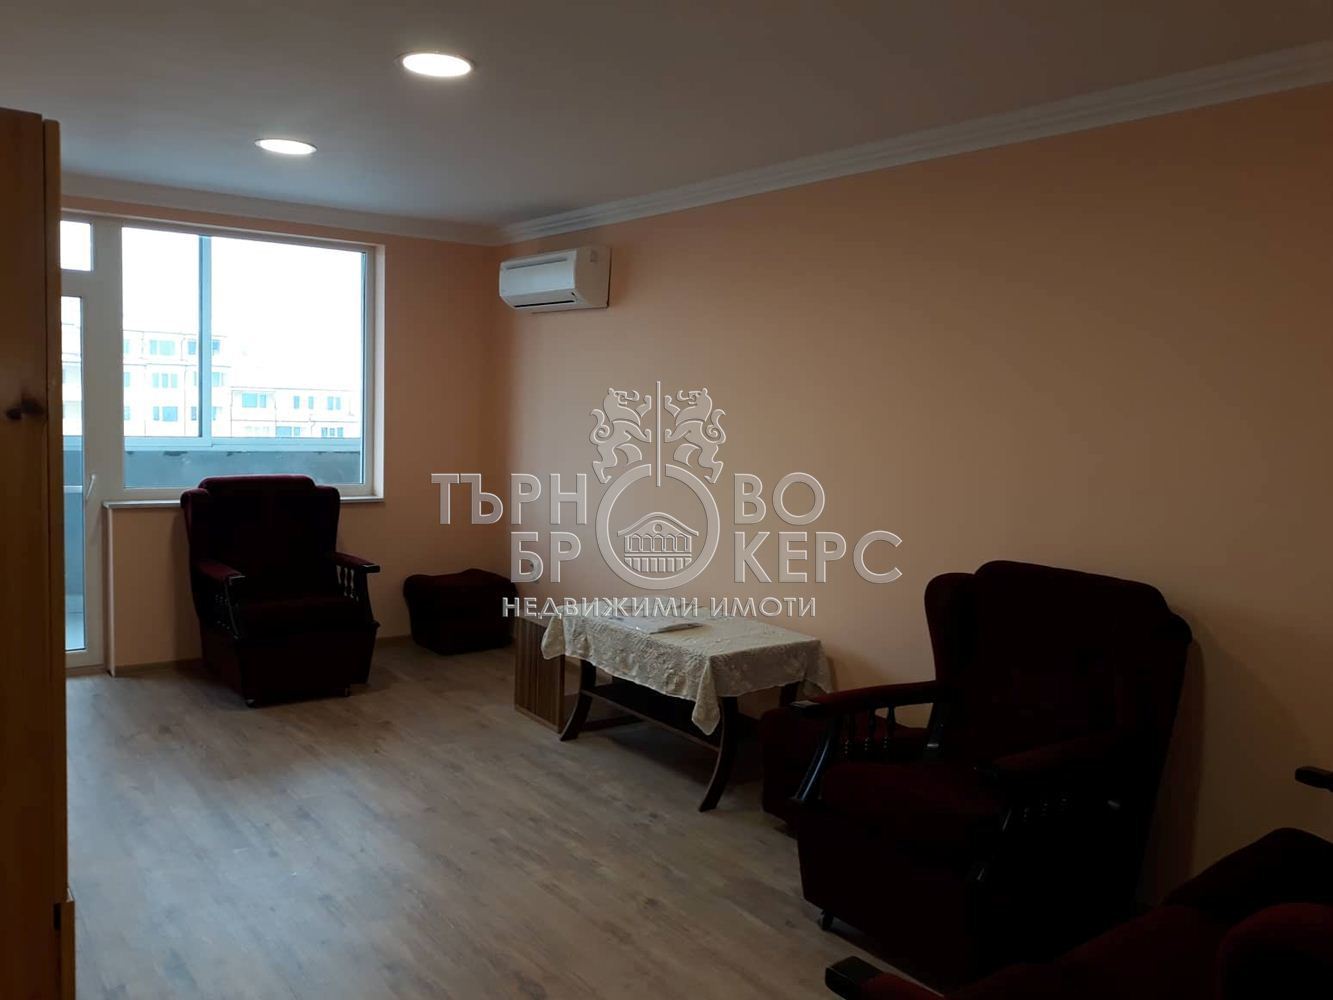 Тристаен апартамент  във  Велико Търново за 300  лв - Тристаен